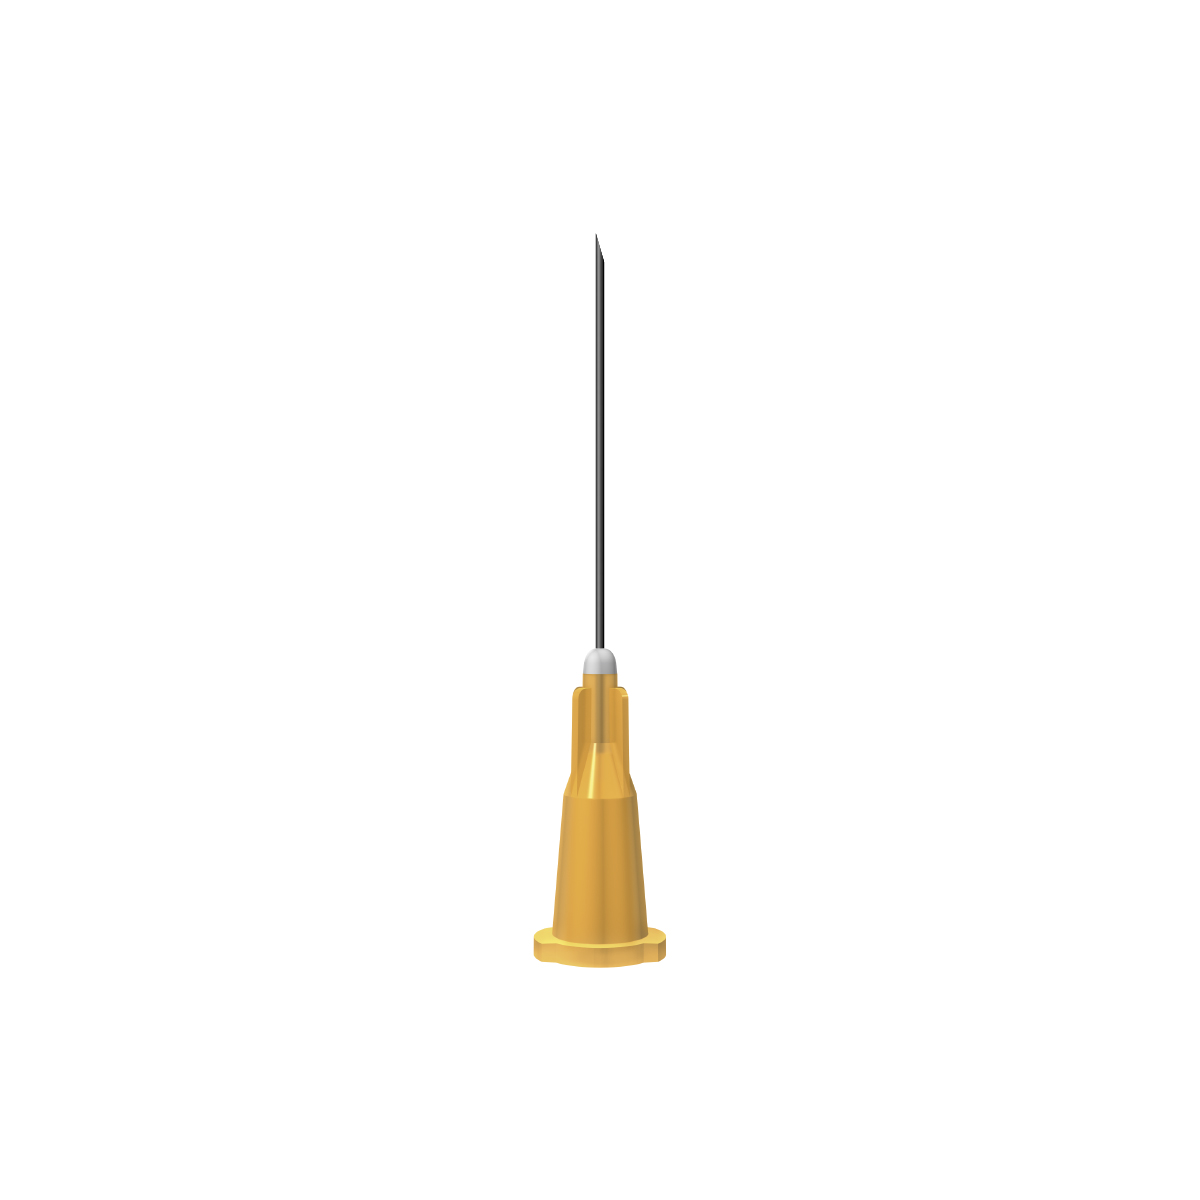 BBraun: Orange 25G 25mm (1 inch) needle